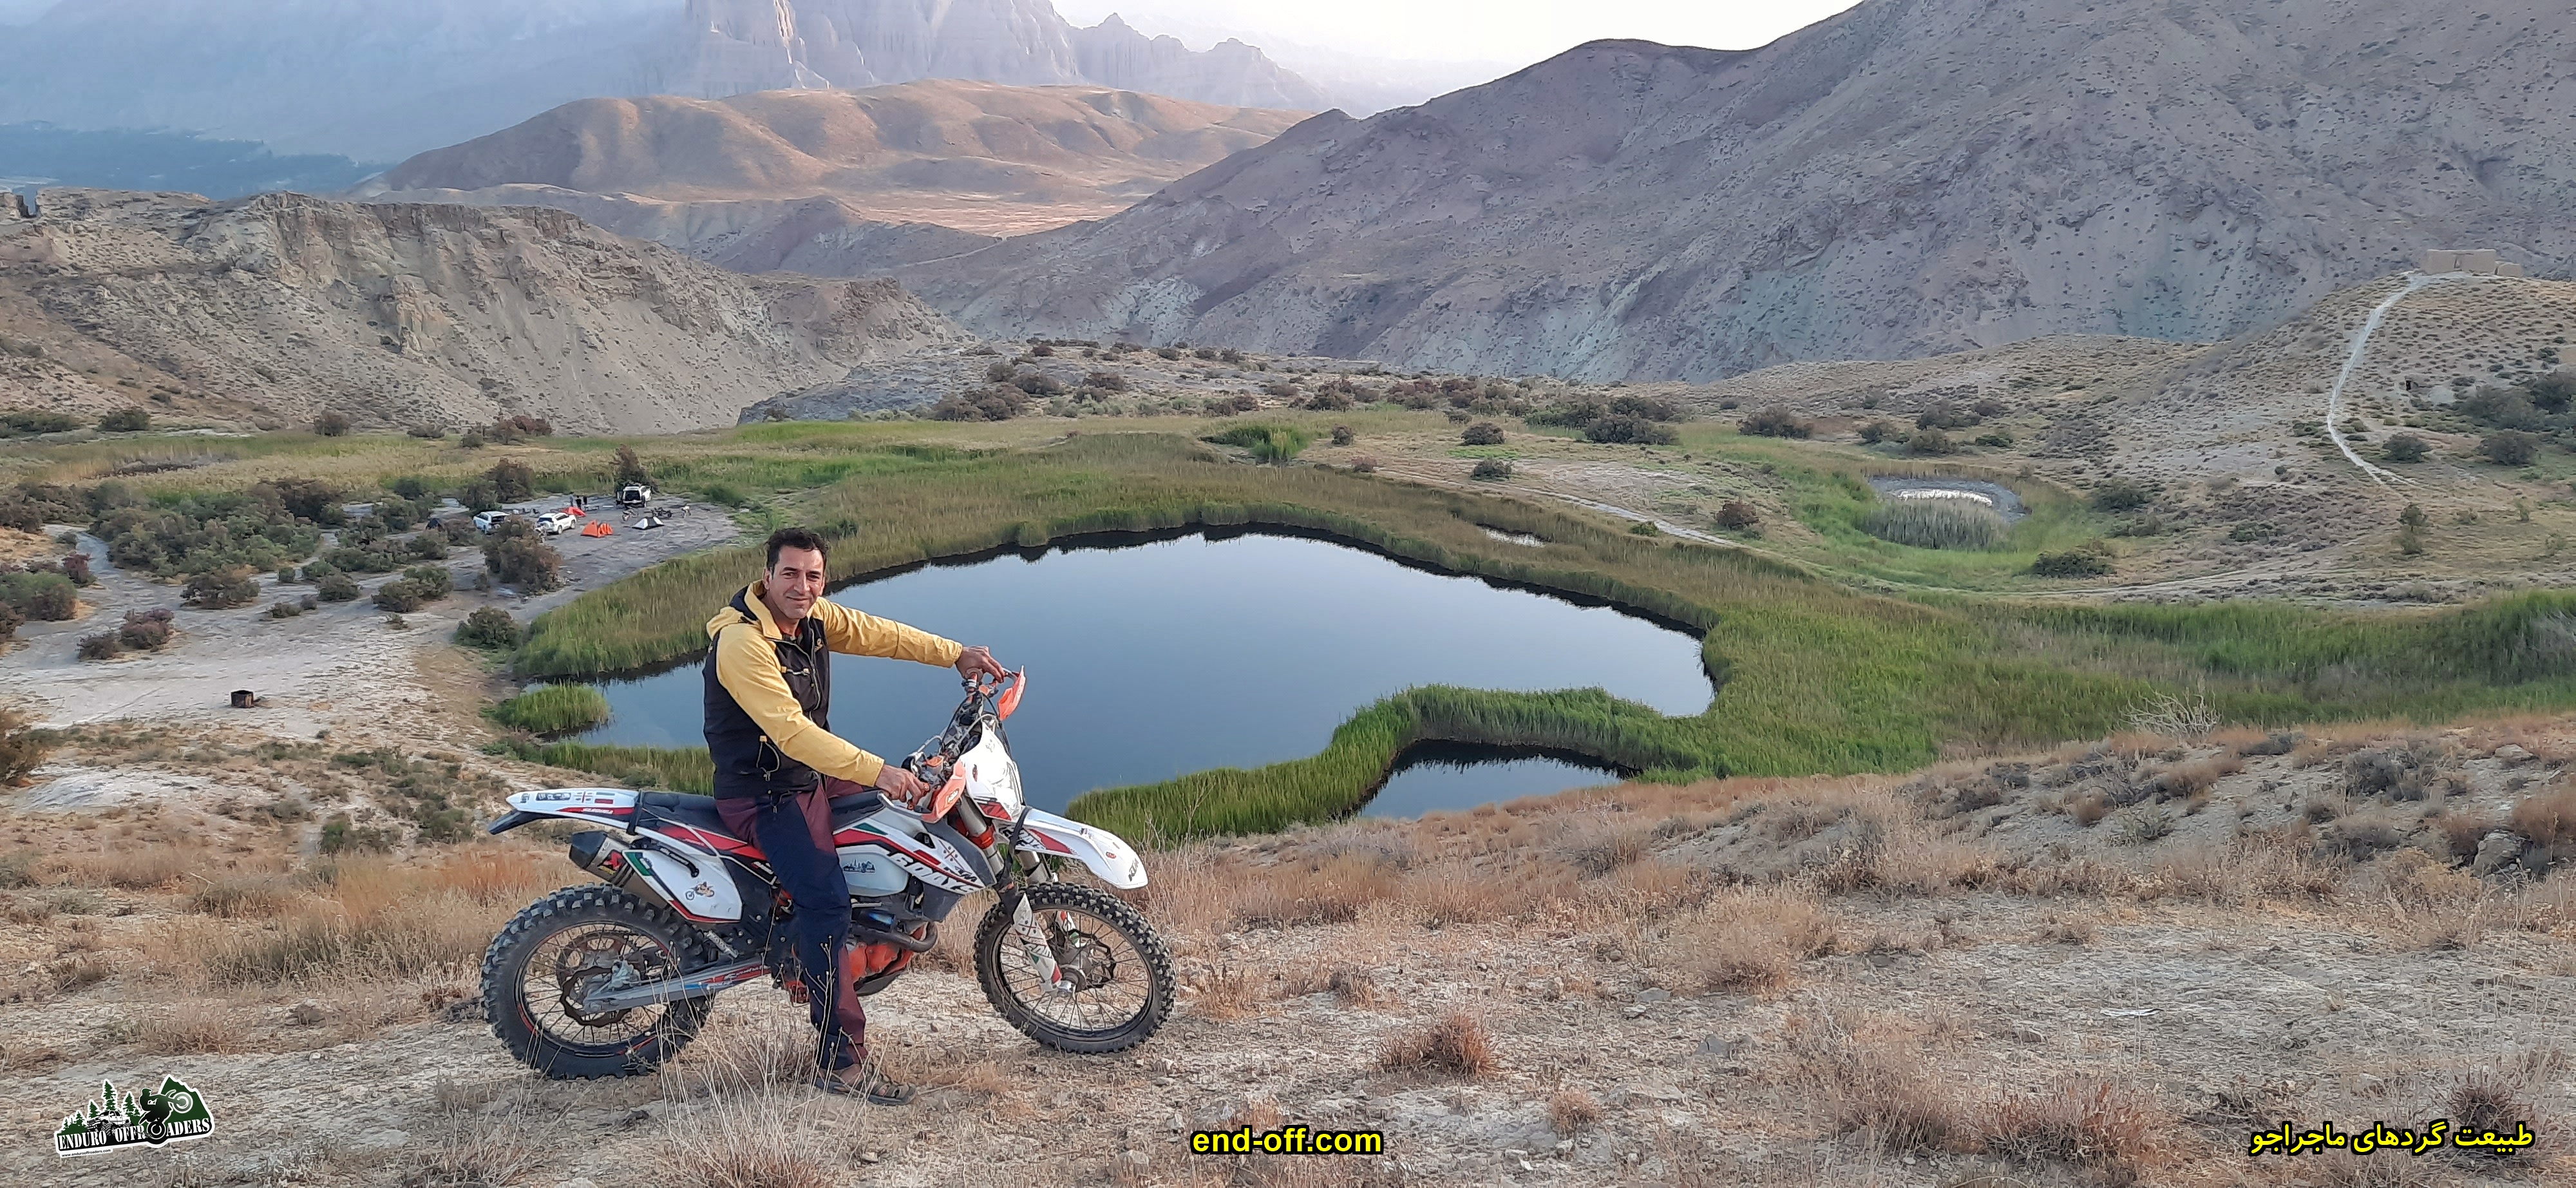 دریاچه آهنک Ahanak - تابستان 1399 2020